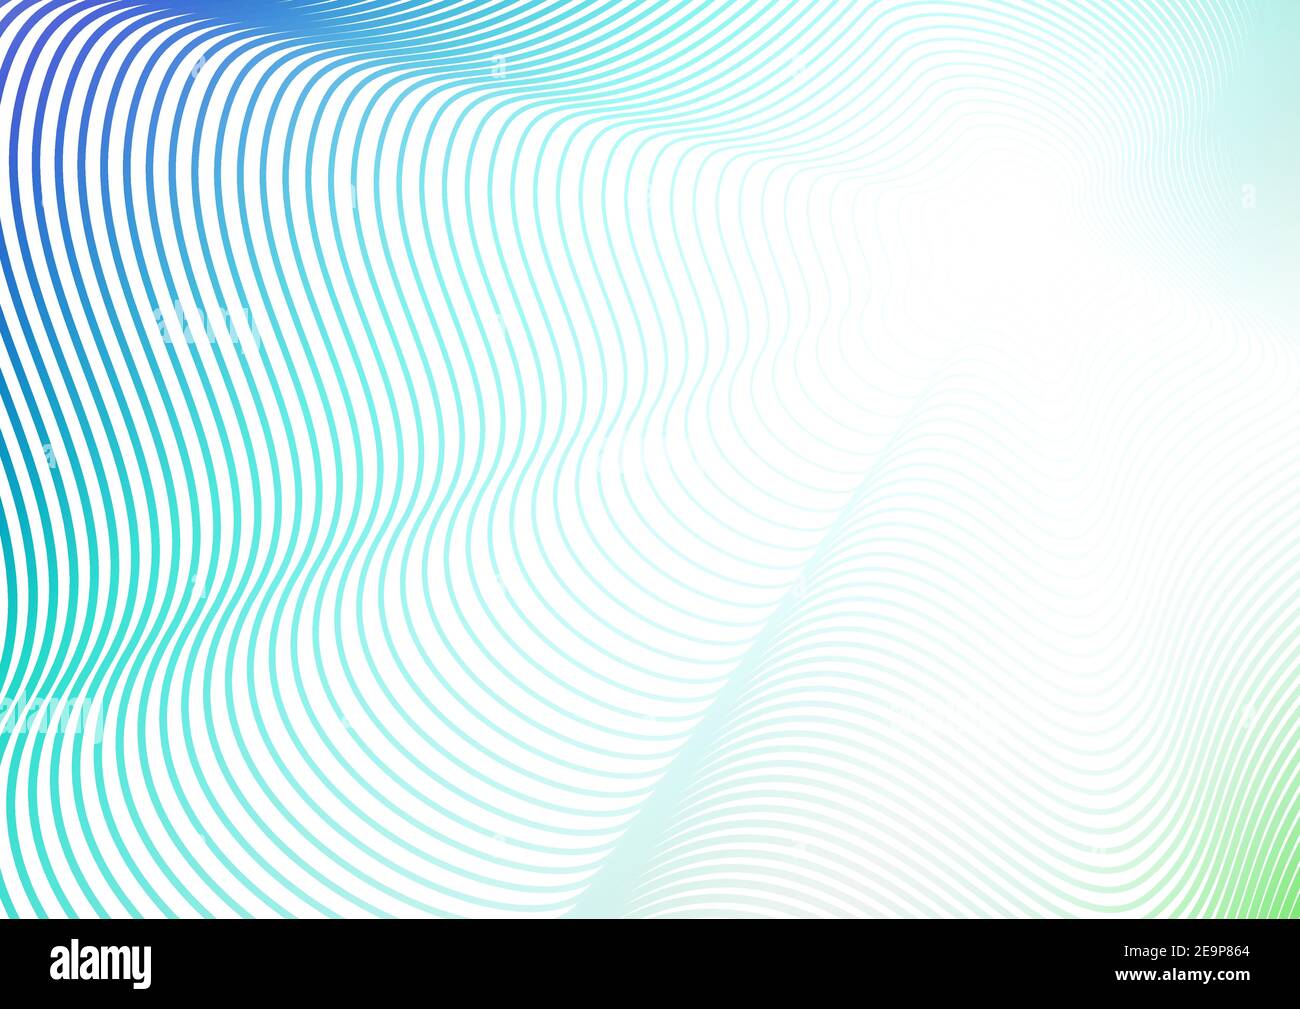 Wellendesign, Hintergrund mit Flash-Effekt. Türkis, blau, grün, weiß Farbverlauf. Futuristisches Linienmuster. Vektor farbige Abstraktion. EPS10 Stock Vektor